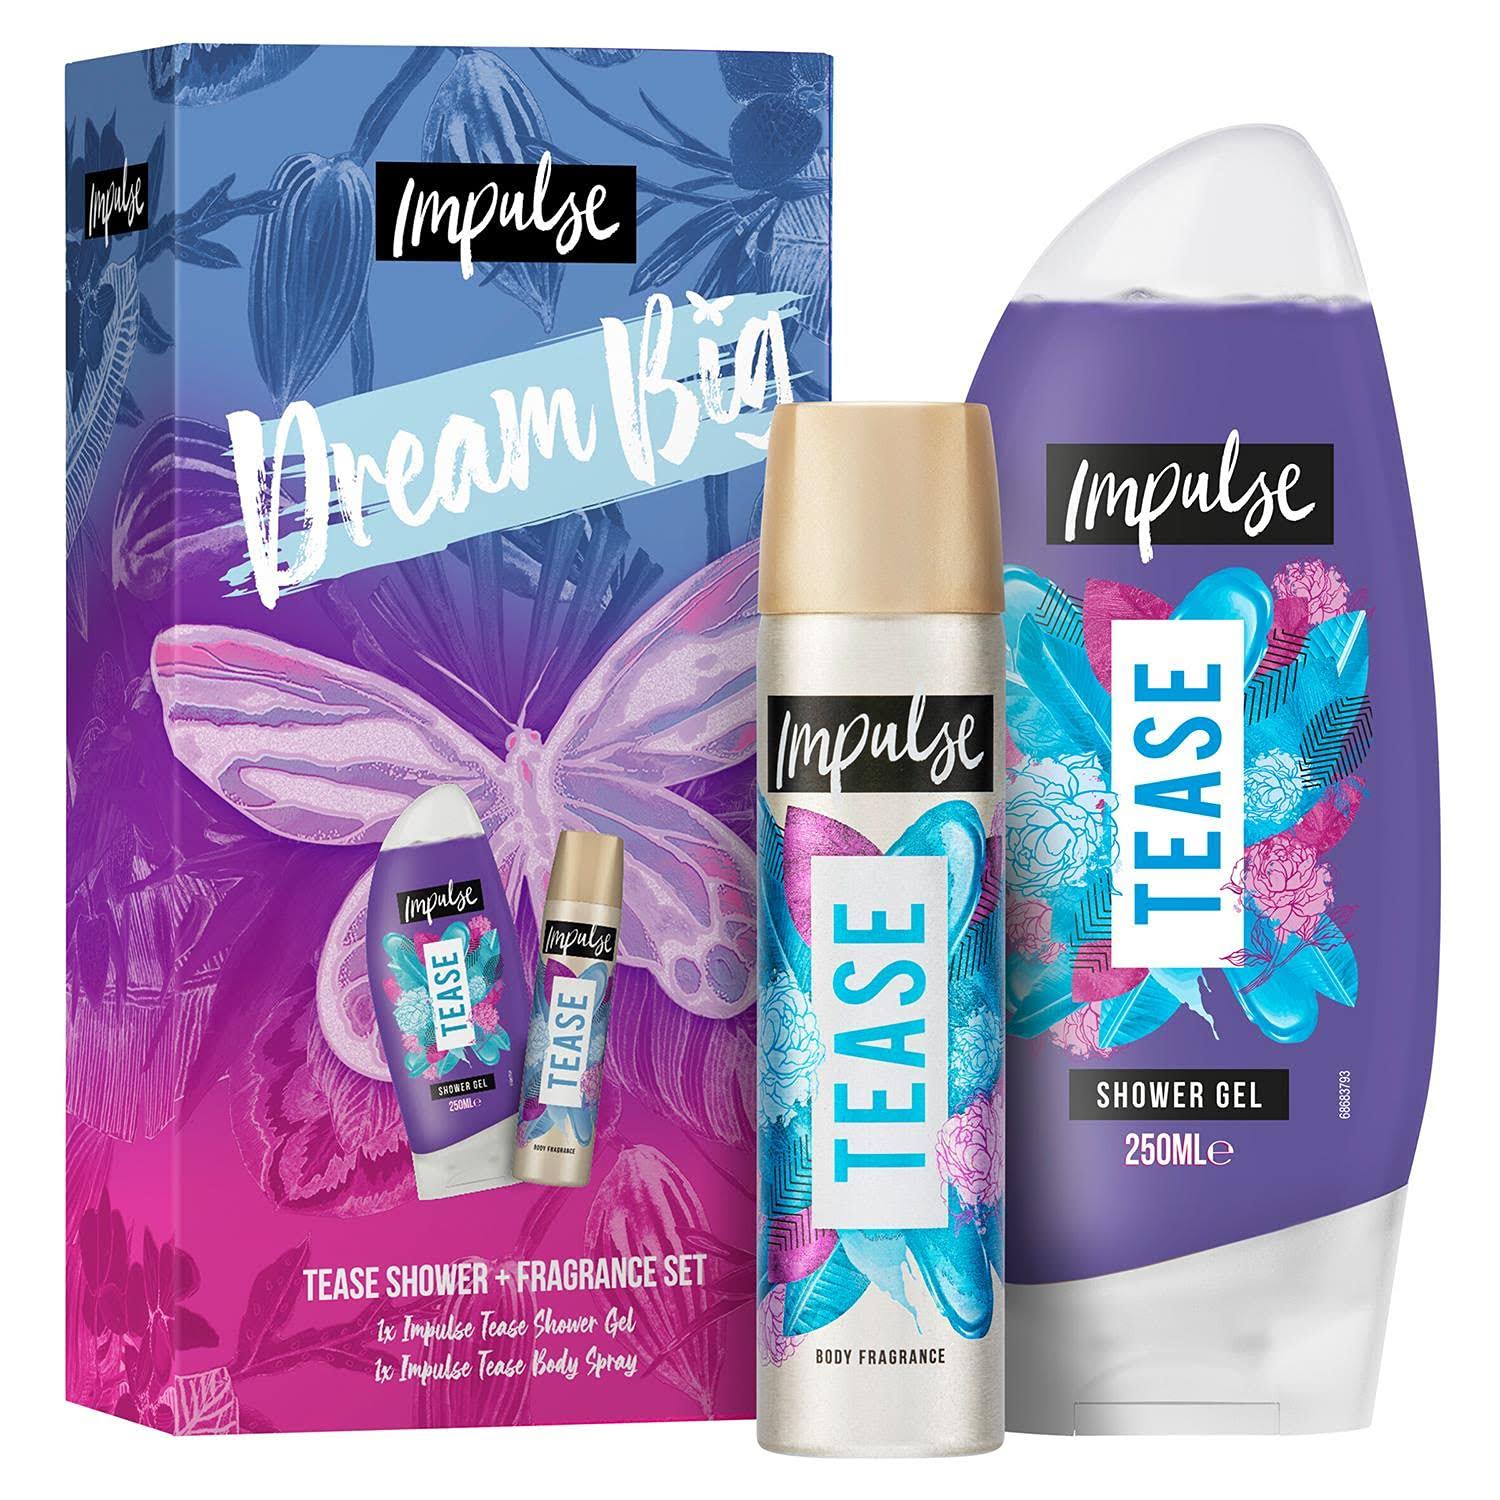 Impulse Dream Big Body Fragrance and Shower Gel Gift Set - wilko